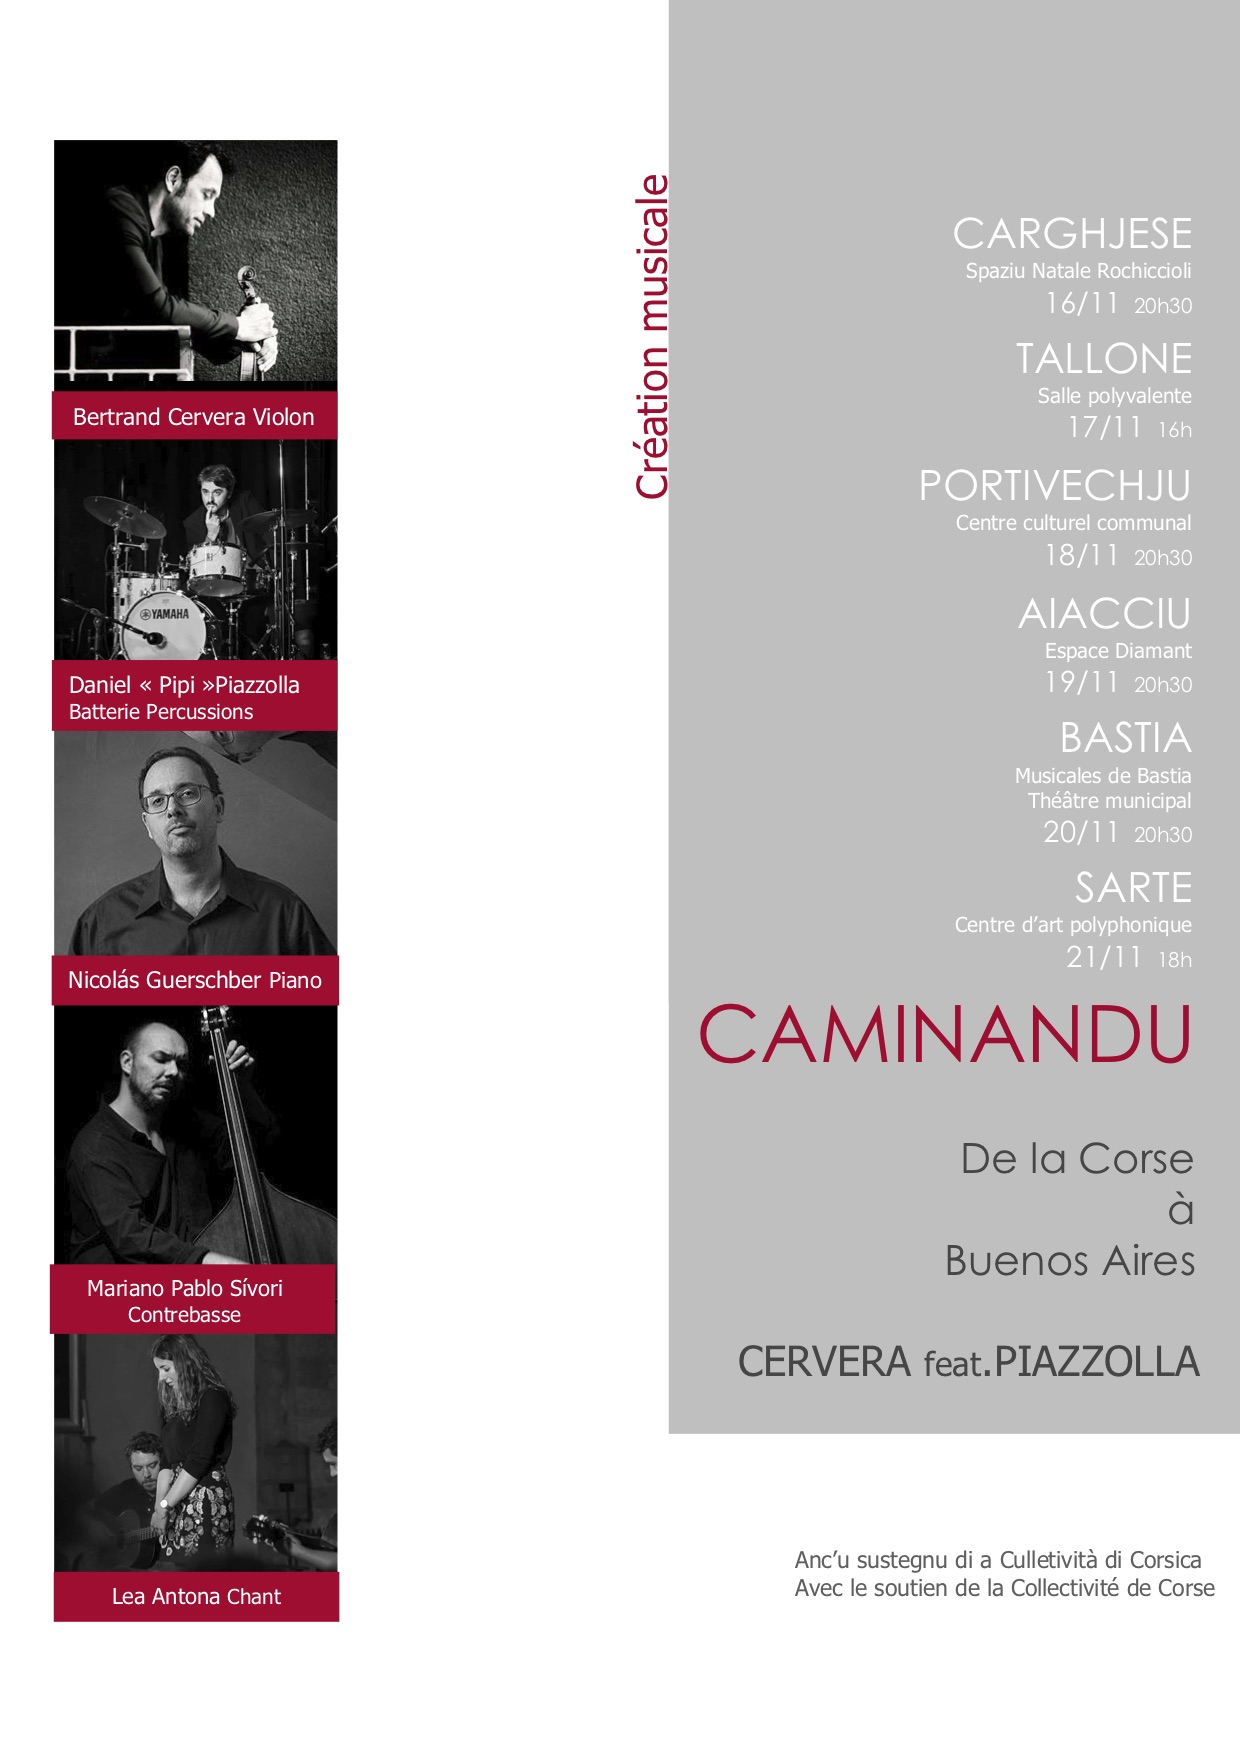 Le groupe "Caminandu" débute sa première tournée en Corse